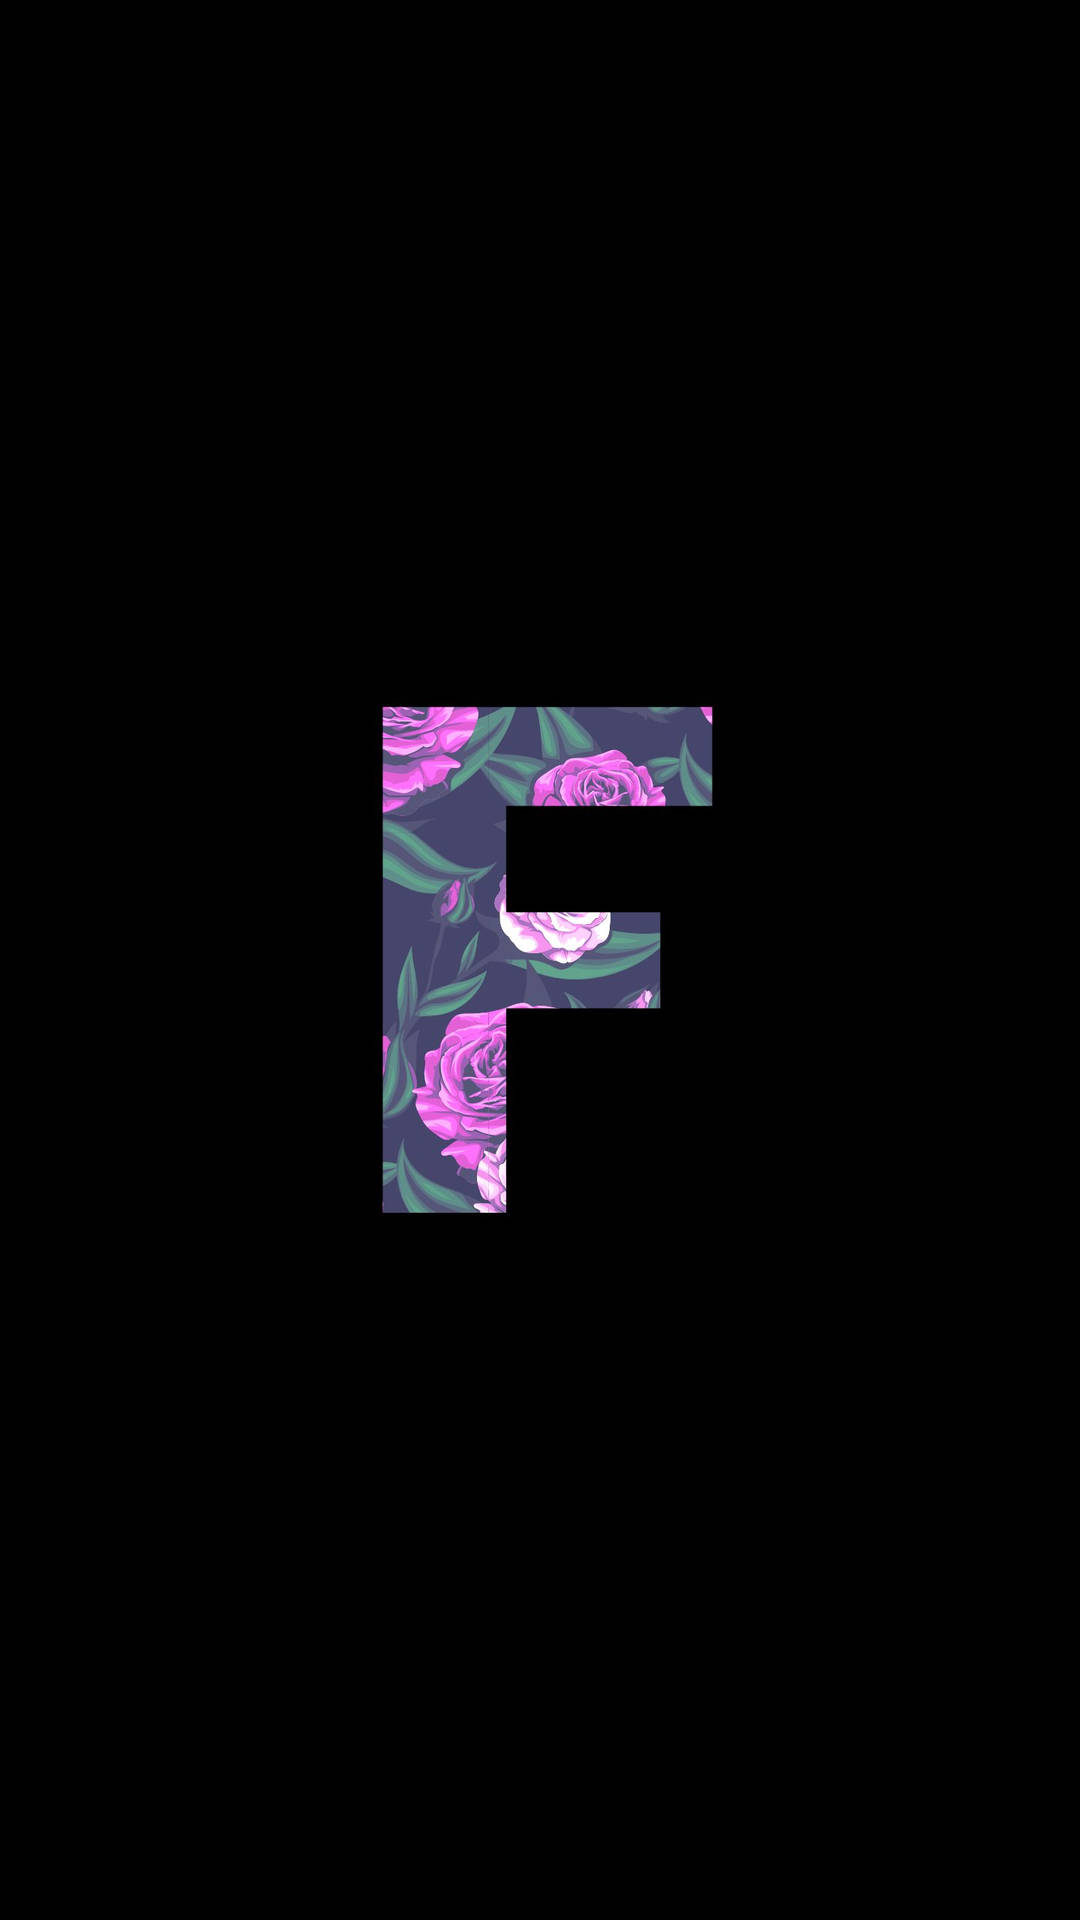 Floral ‘F’ Letter Design Against a Dark Background Wallpaper